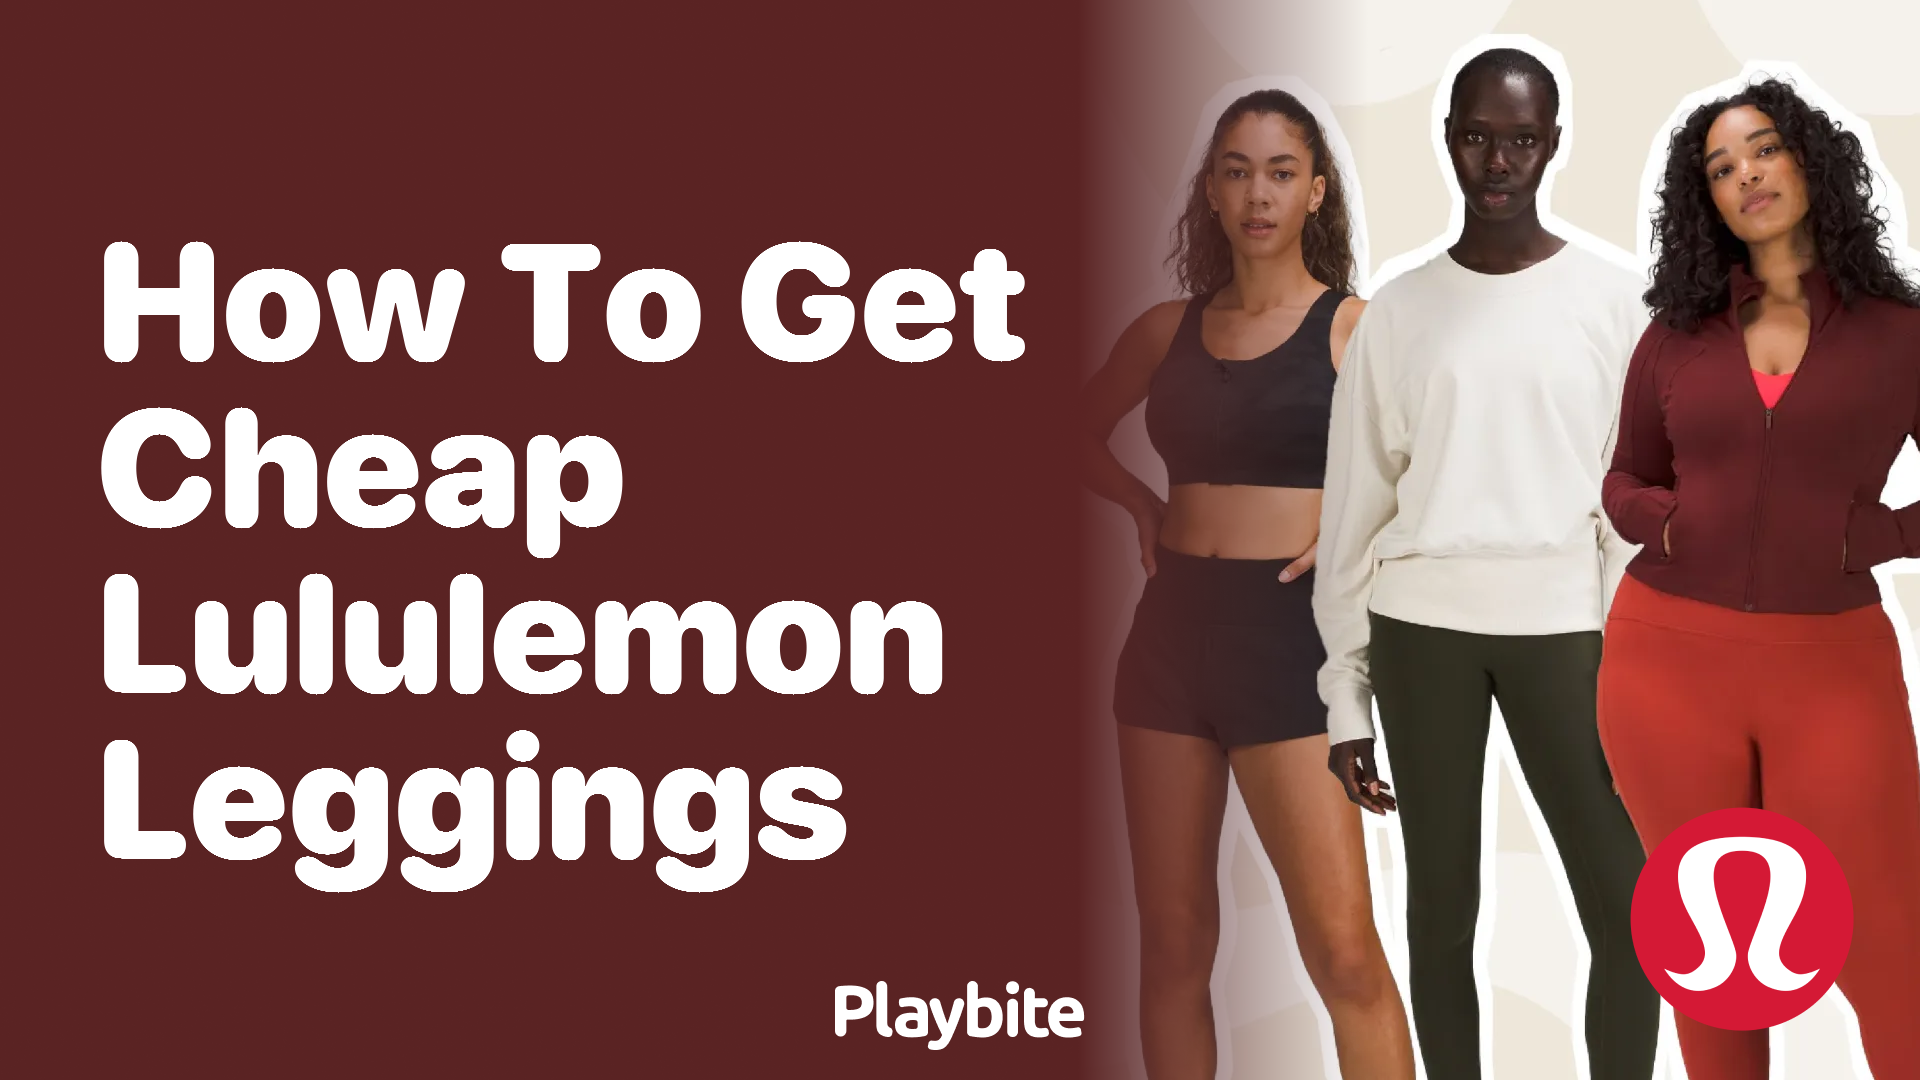 How to Get Lululemon Leggings Cheap - Playbite